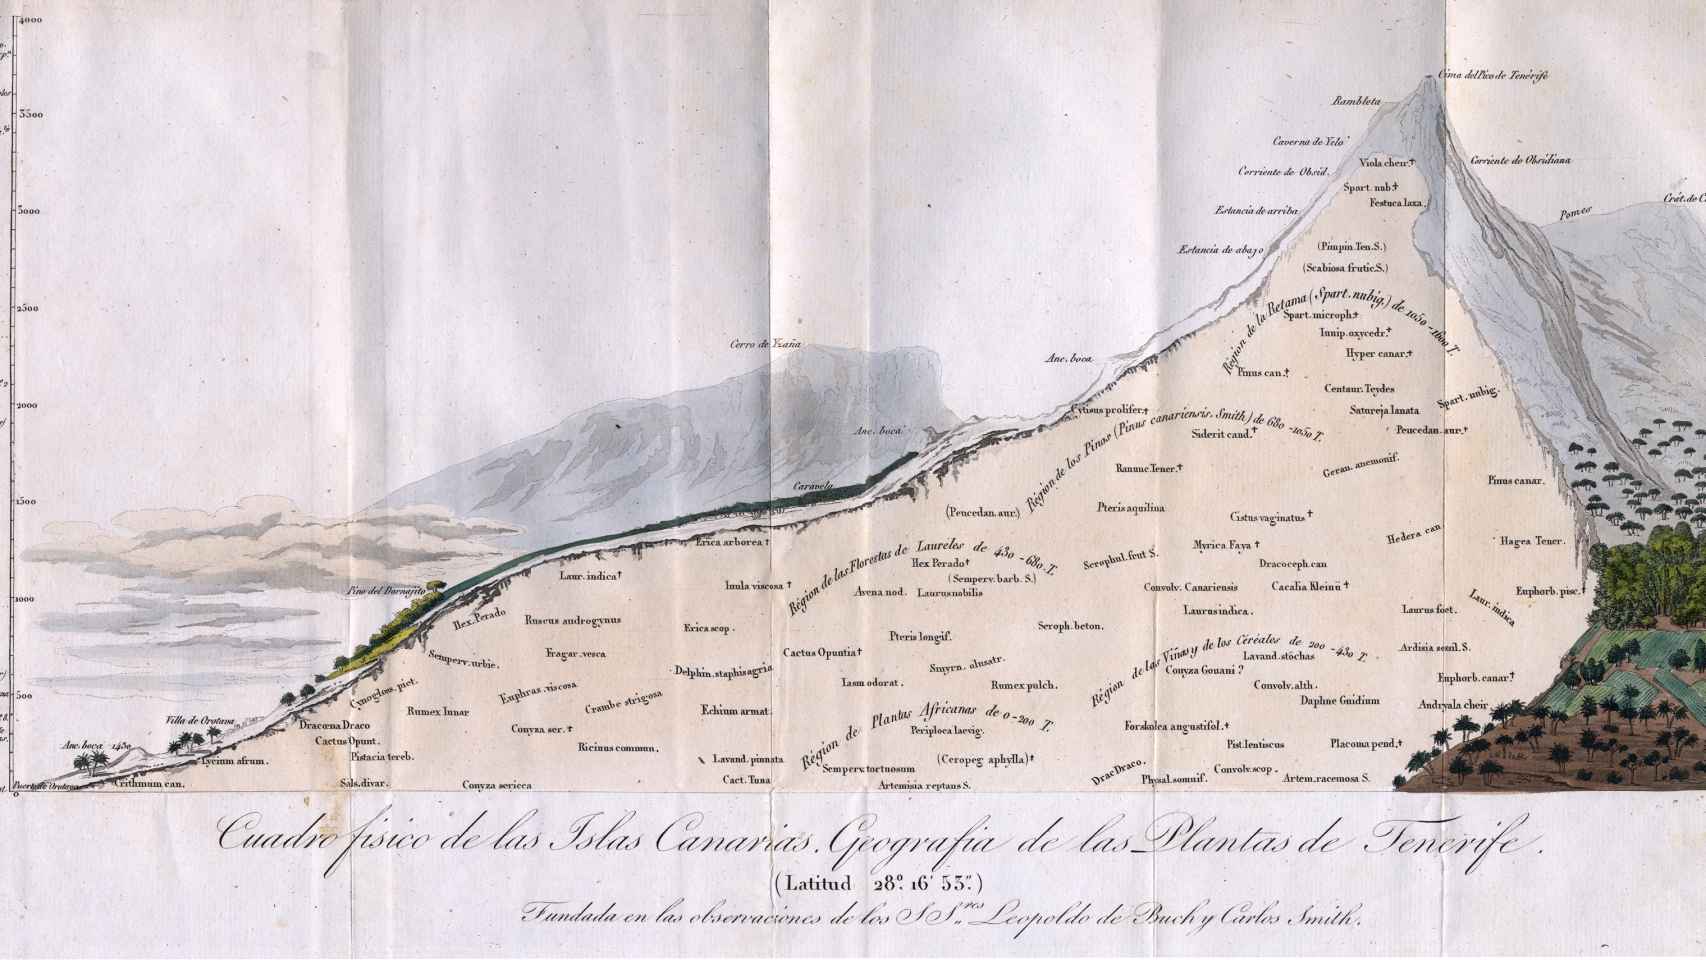 Geografía de las plantas de Tenerife, hecha a partir de las observaciones de Leopoldo de Buch, quien acompañó a Humboldt en la ascensión al Teide.